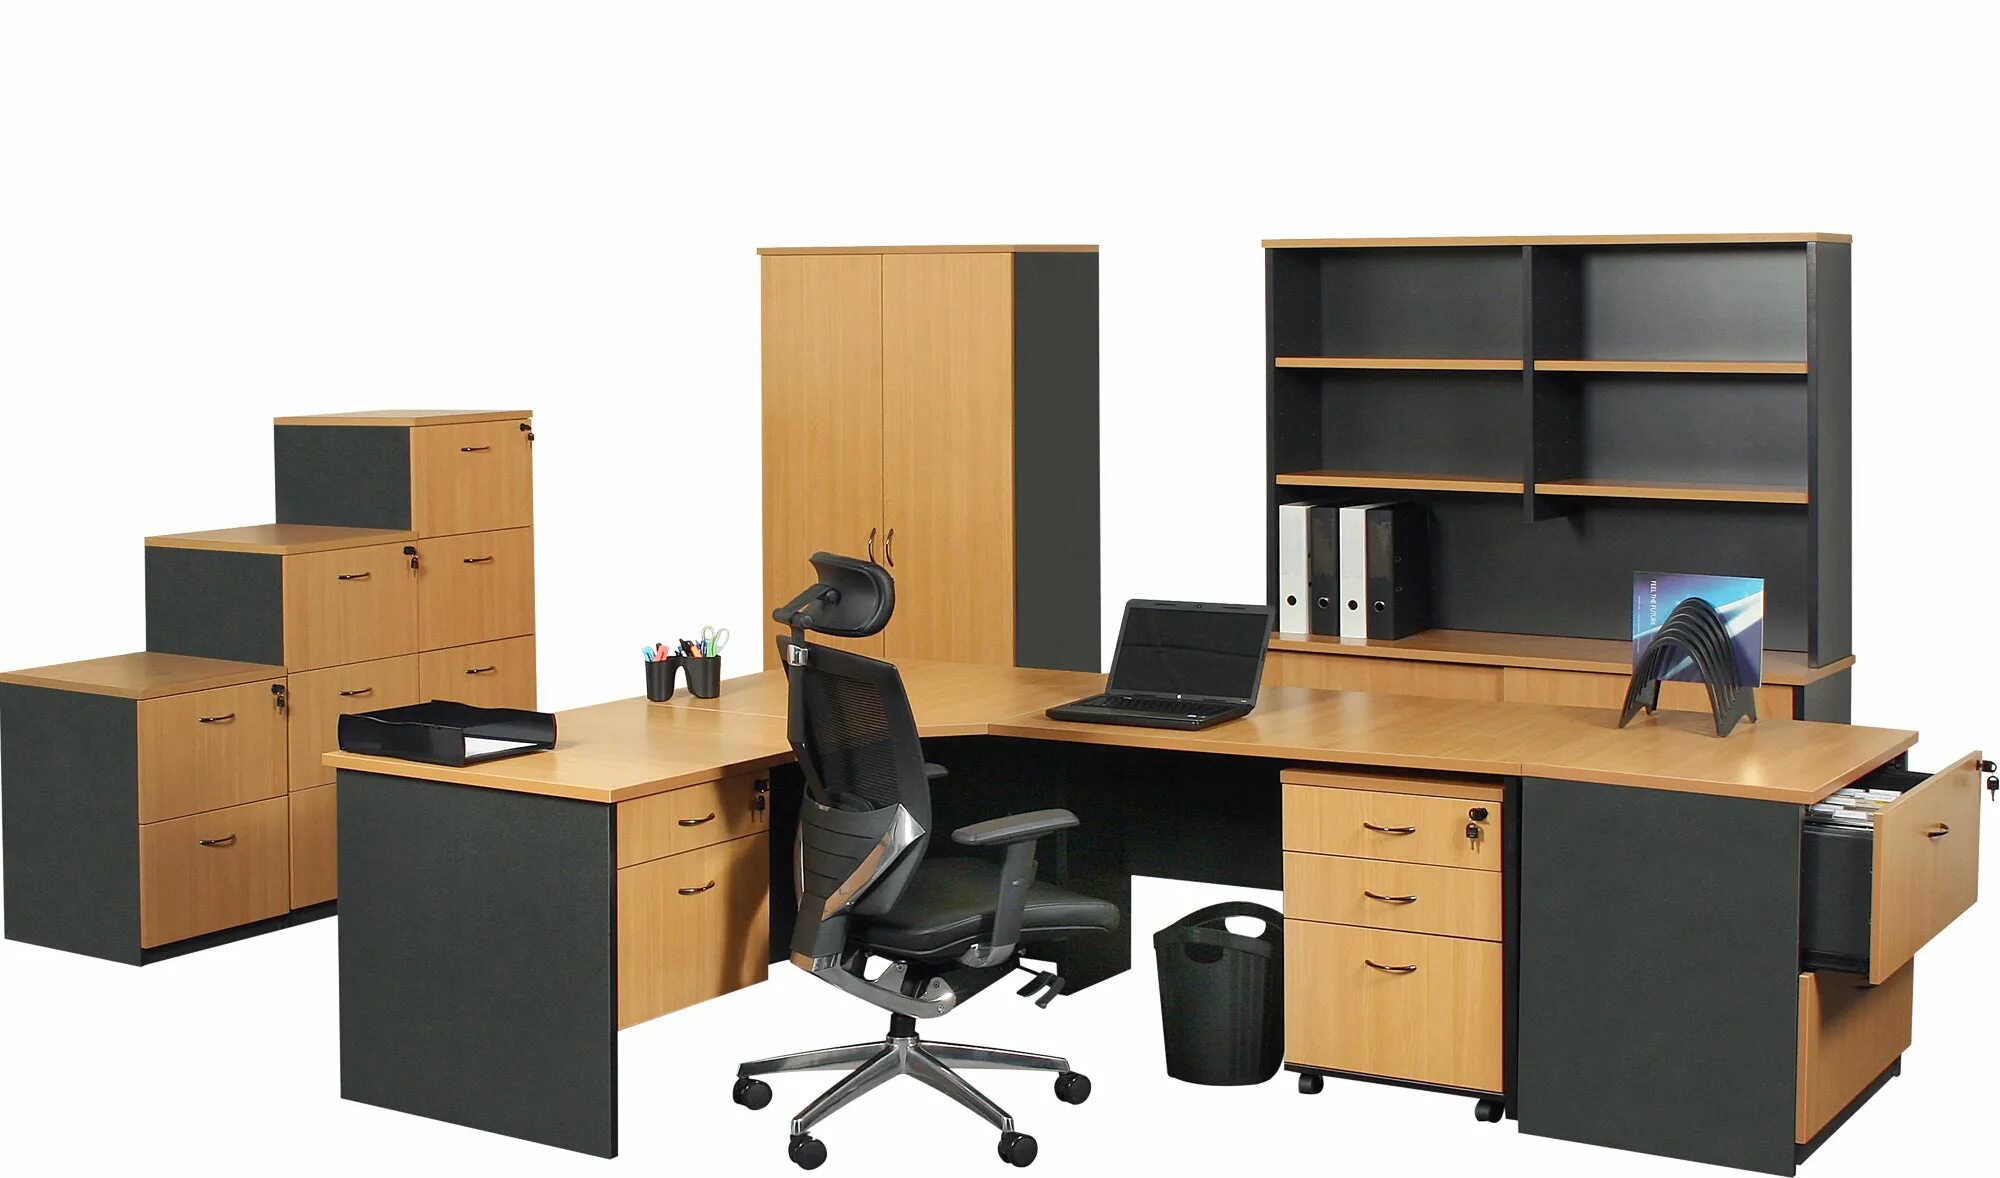 Кипи стол. Мебель офисная 4300*600*3200. Стол офисный. Офисная корпусная мебель. Набор офисной мебели.